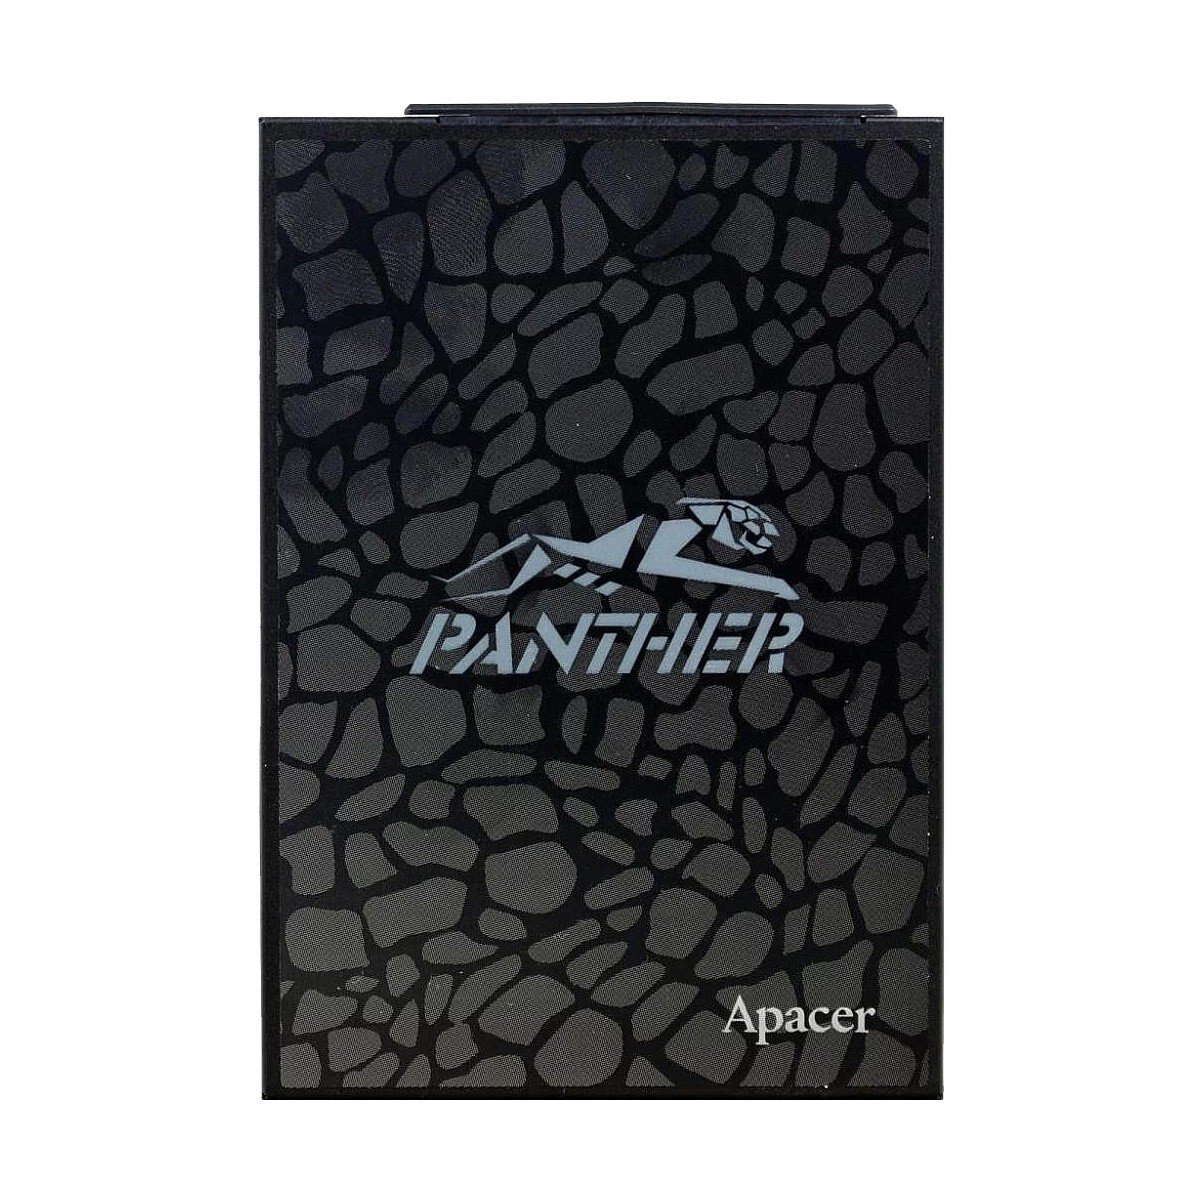 Ssd накопитель panther. Apacer as340 480gb. SSD SATA 240 ГБ Apacer as340 Panther. Apacer SSD 240gb SATA III. SSD 2,5" SATA 480gb Apacer as340.